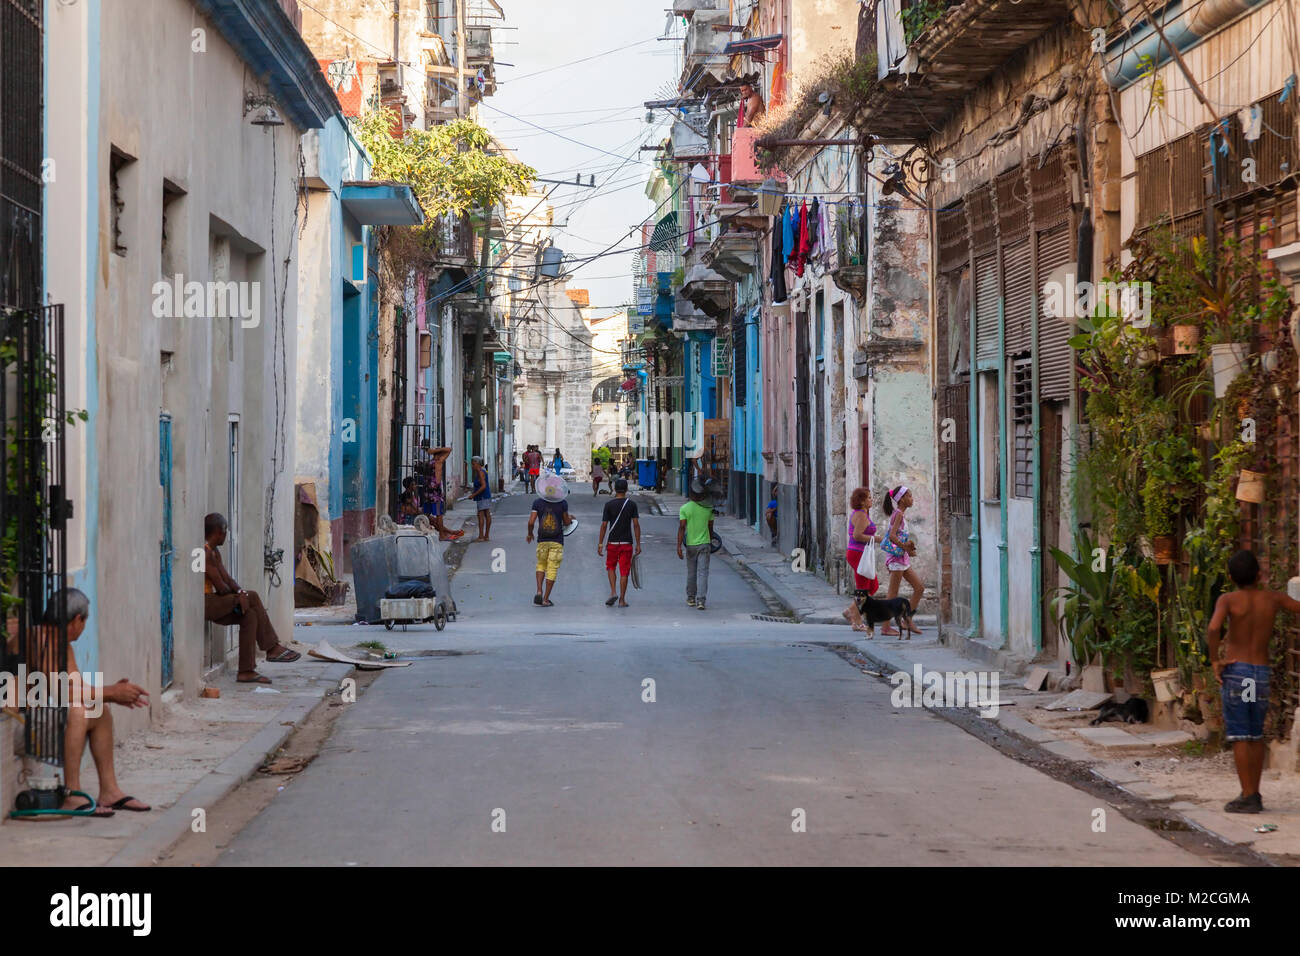 A typical street scene in Havana, Cuba. Stock Photo